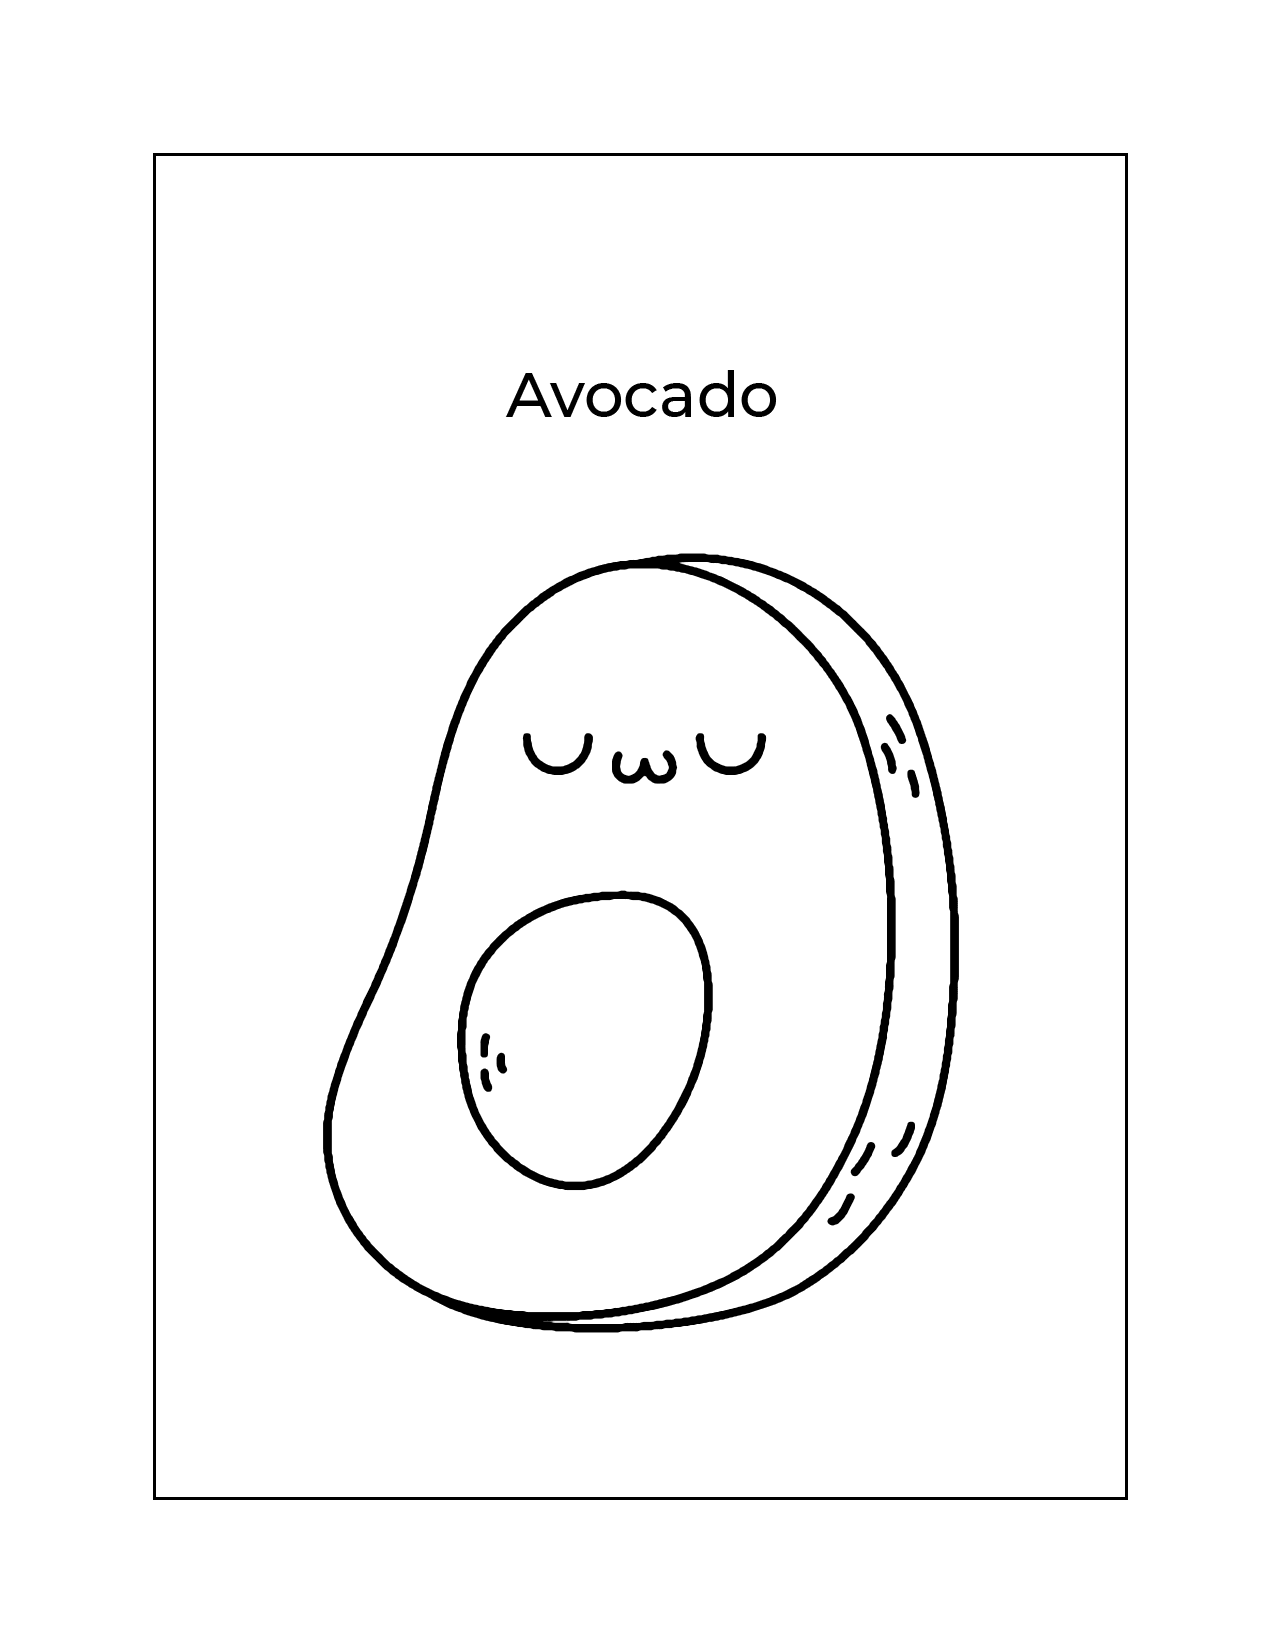 Adorable Avocado Coloring Page